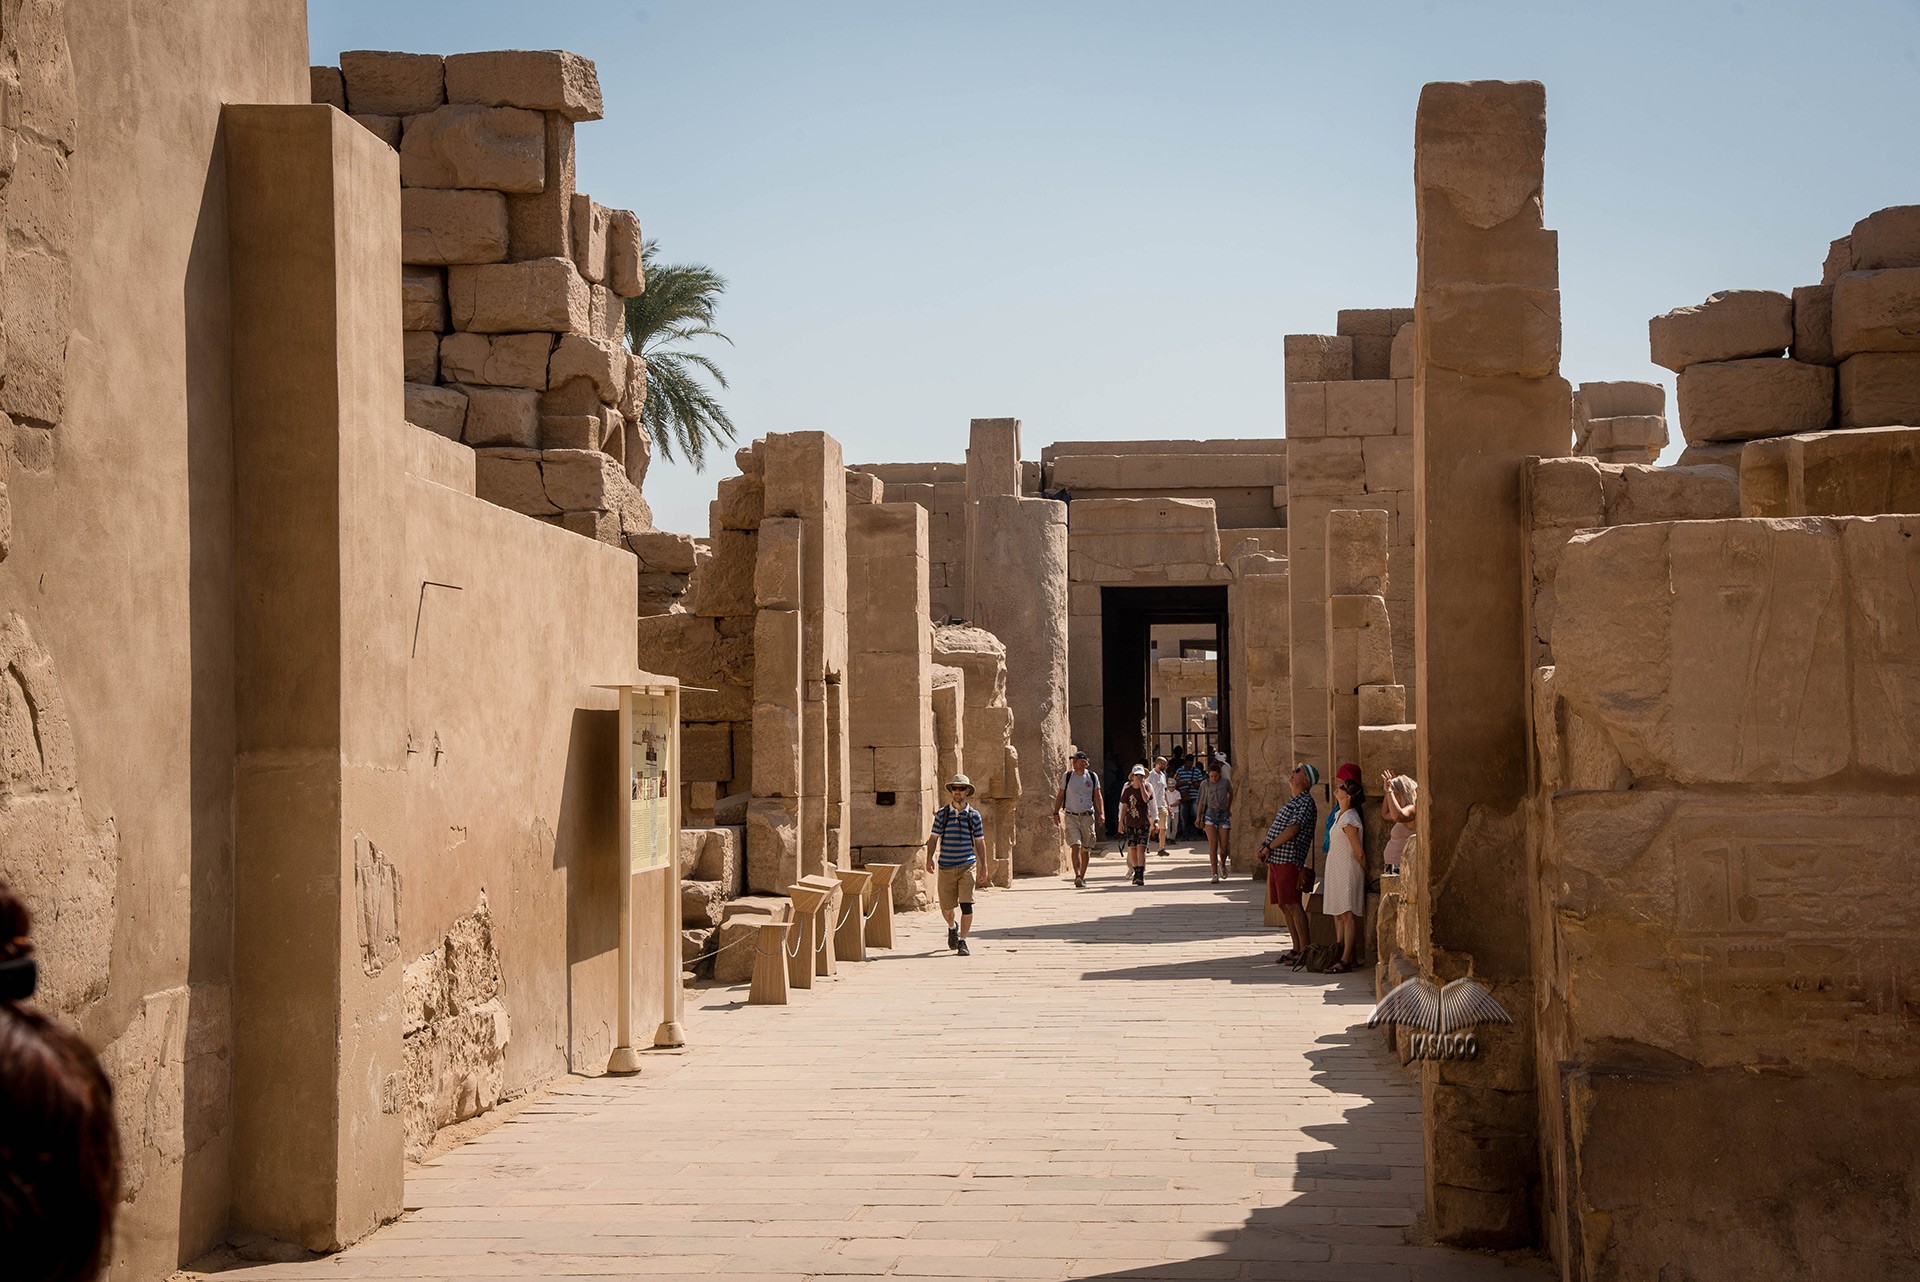 Ostufer - Karnak-Tempel